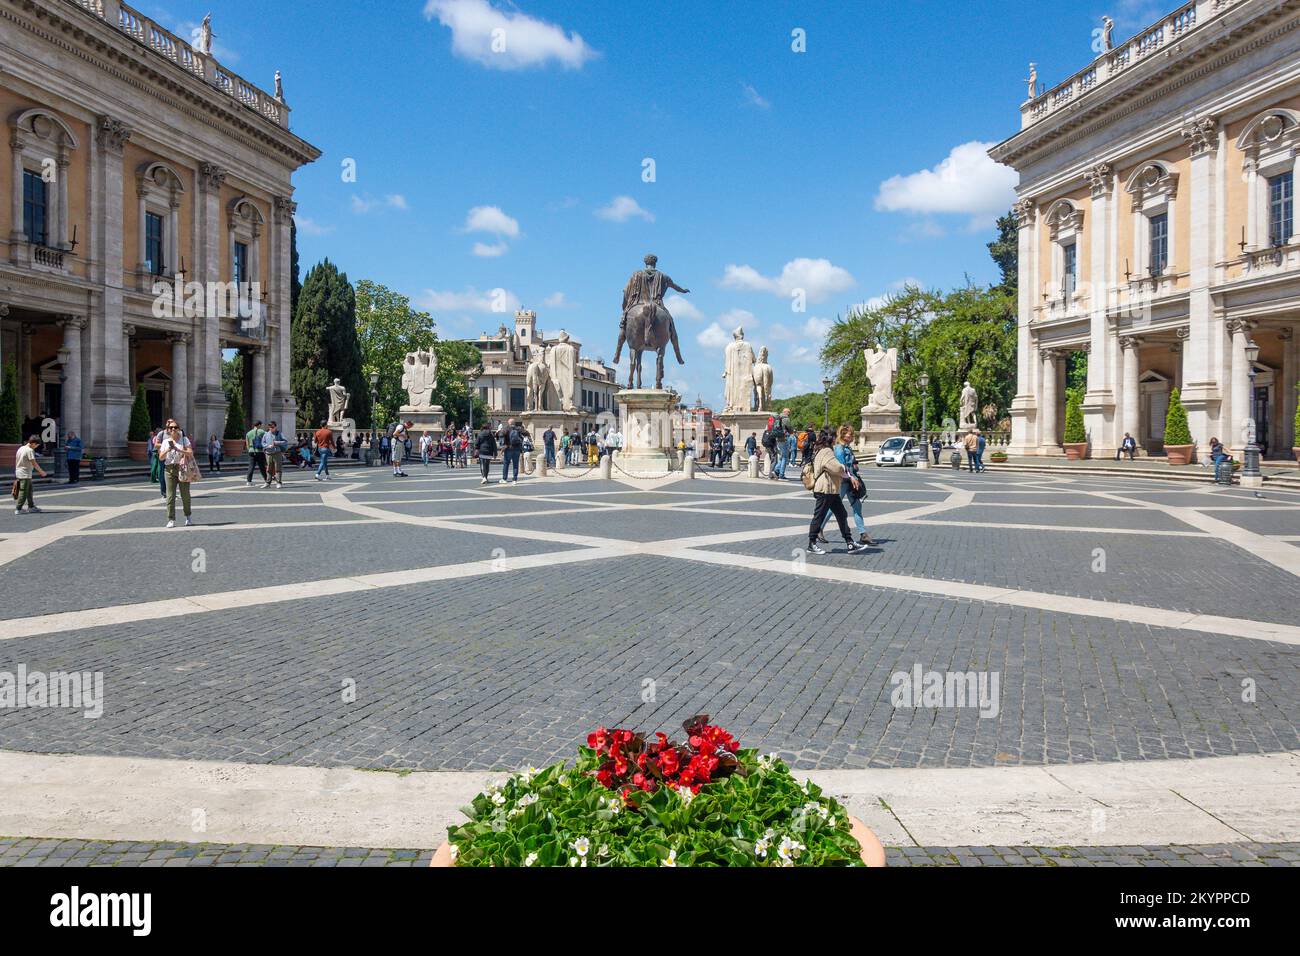 Piazza del Campidoglio, centre de Rome, Rome (Roma), région du Latium, Italie Banque D'Images